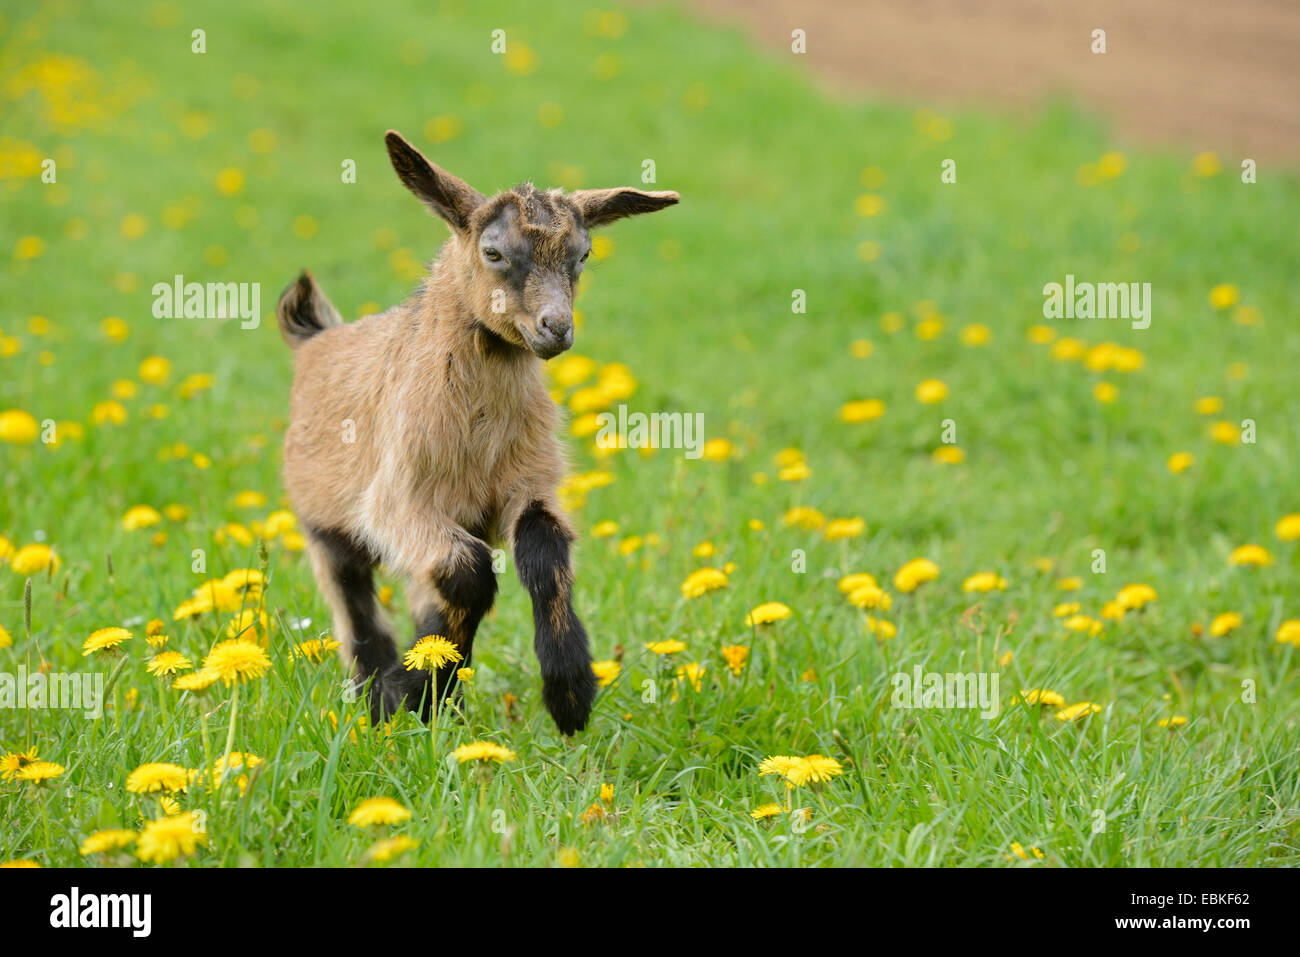 domestic goat (Capra hircus, Capra aegagrus f. hircus), goatling running across a pasture, Germany Stock Photo